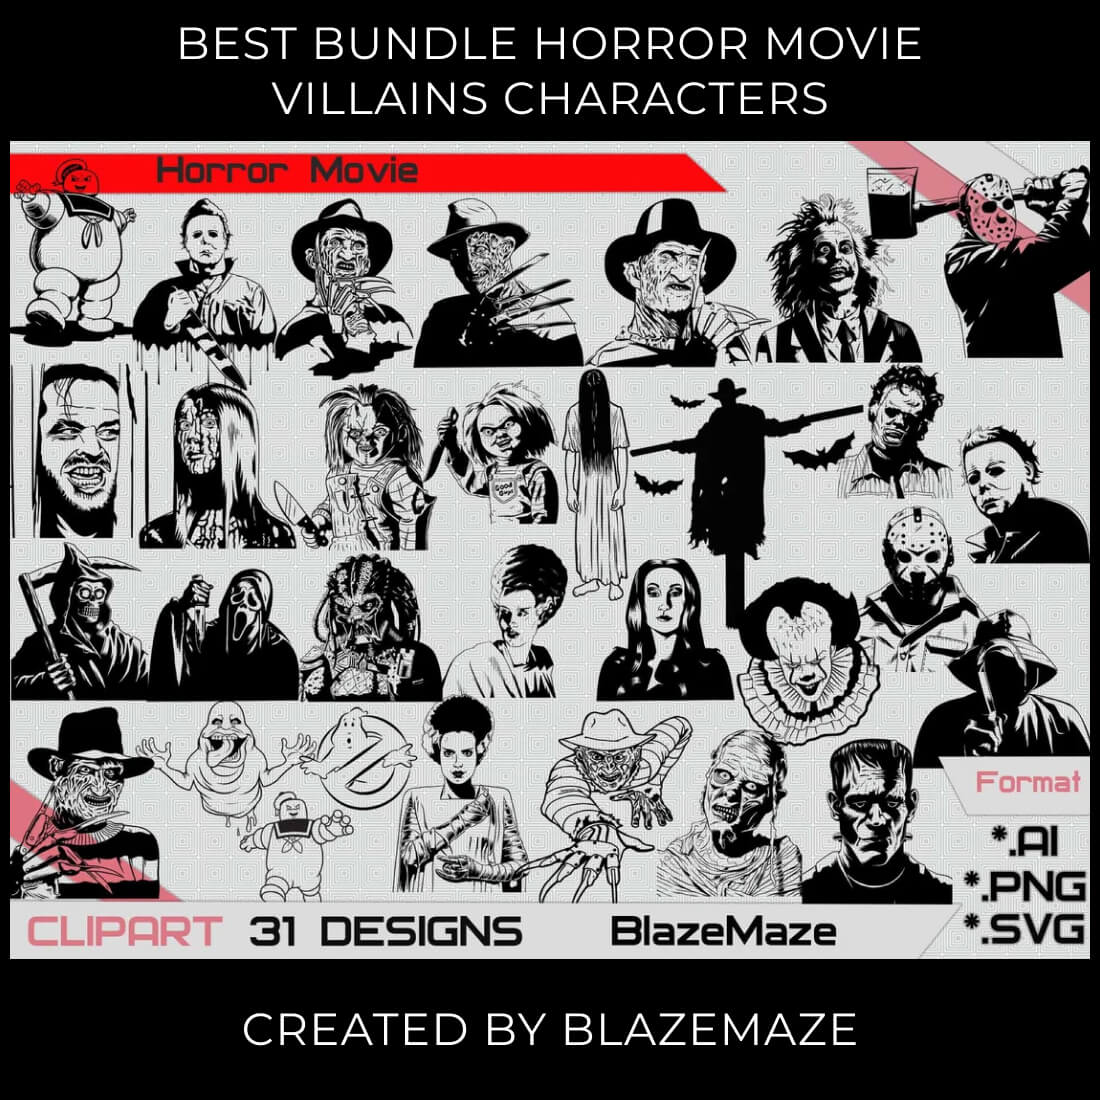  best bundle horror movie villains characters SVG pinterest.